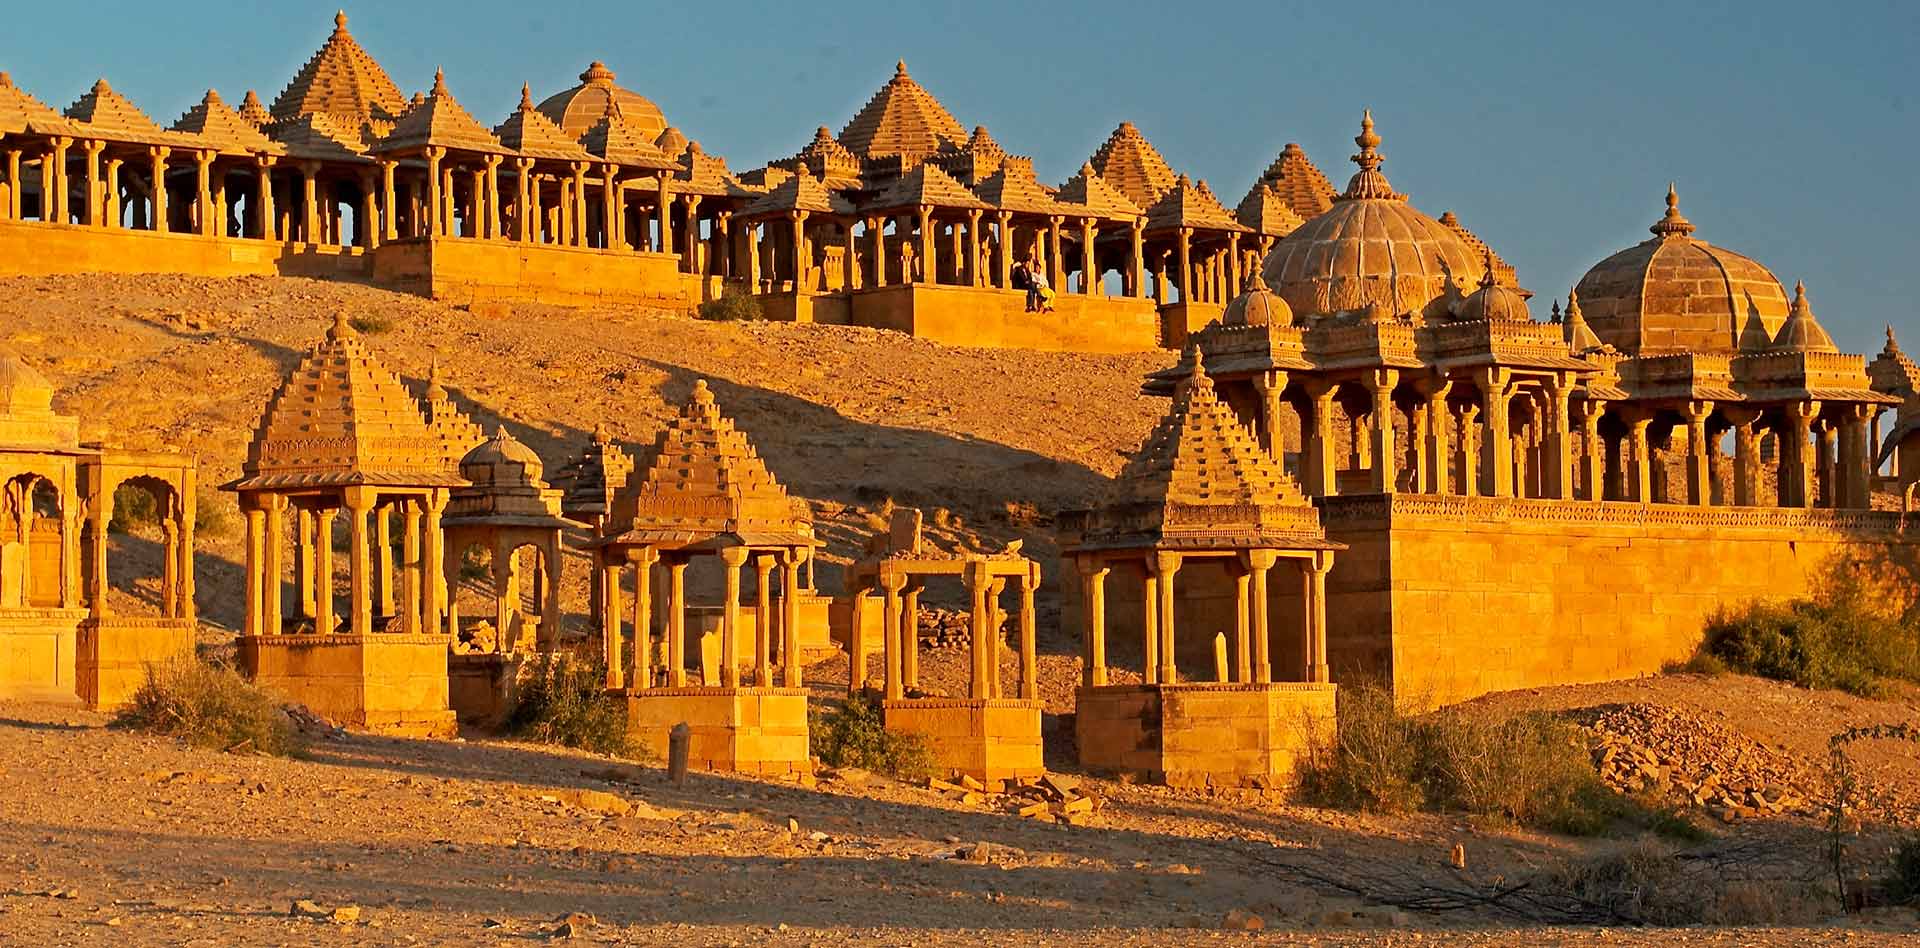 Day 08 : Jodhpur - Jaisalmer